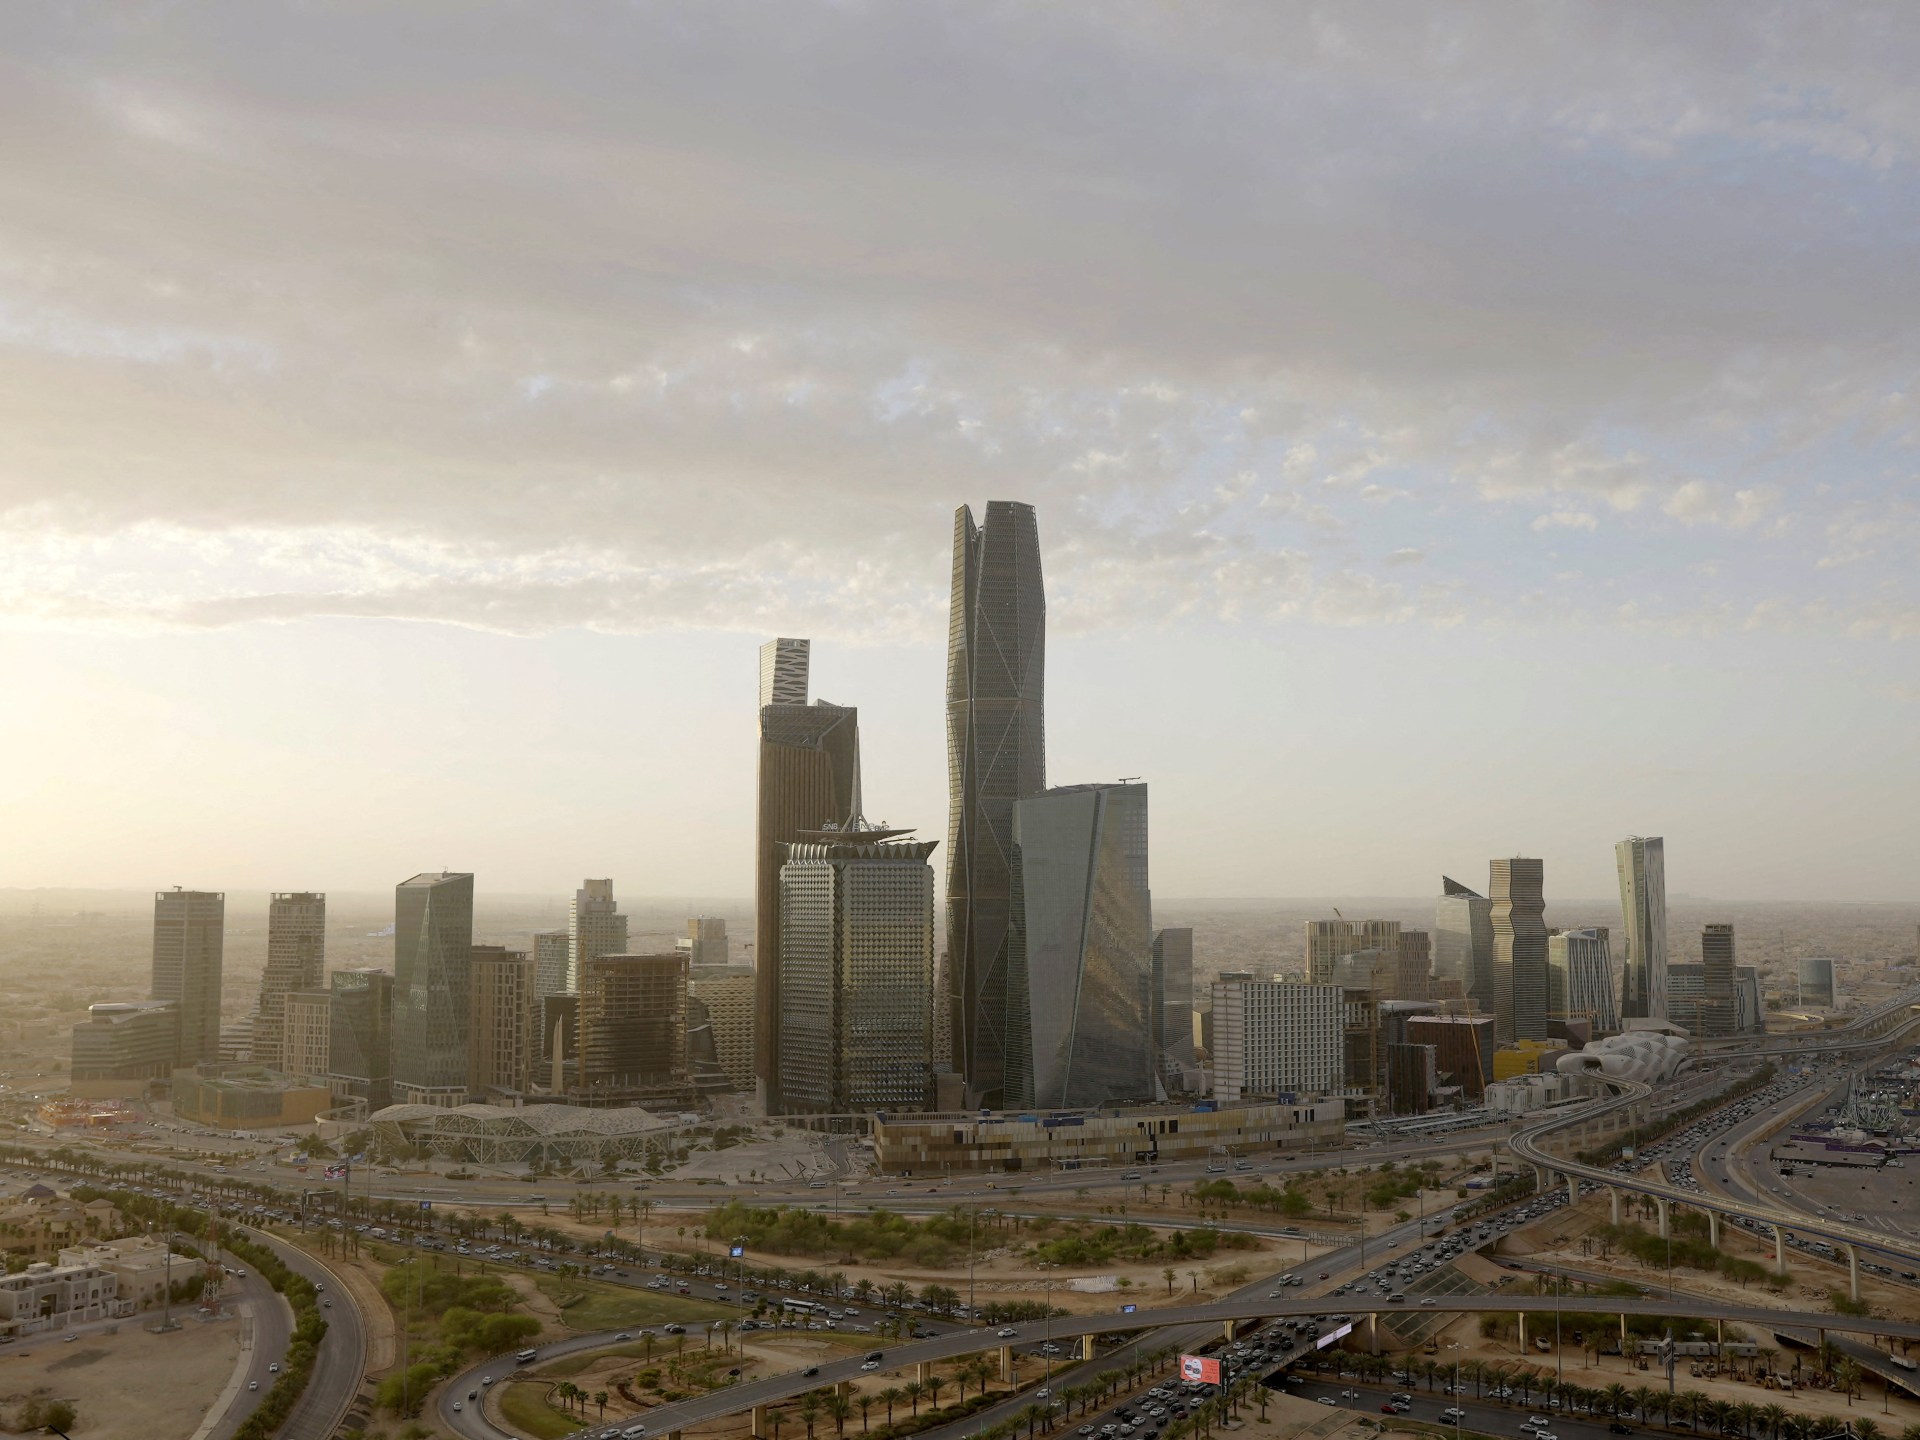 يناير المقبل الموعد النهائي لنقل المقار الإقليمية للشركات إلى السعودية | اقتصاد – البوكس نيوز